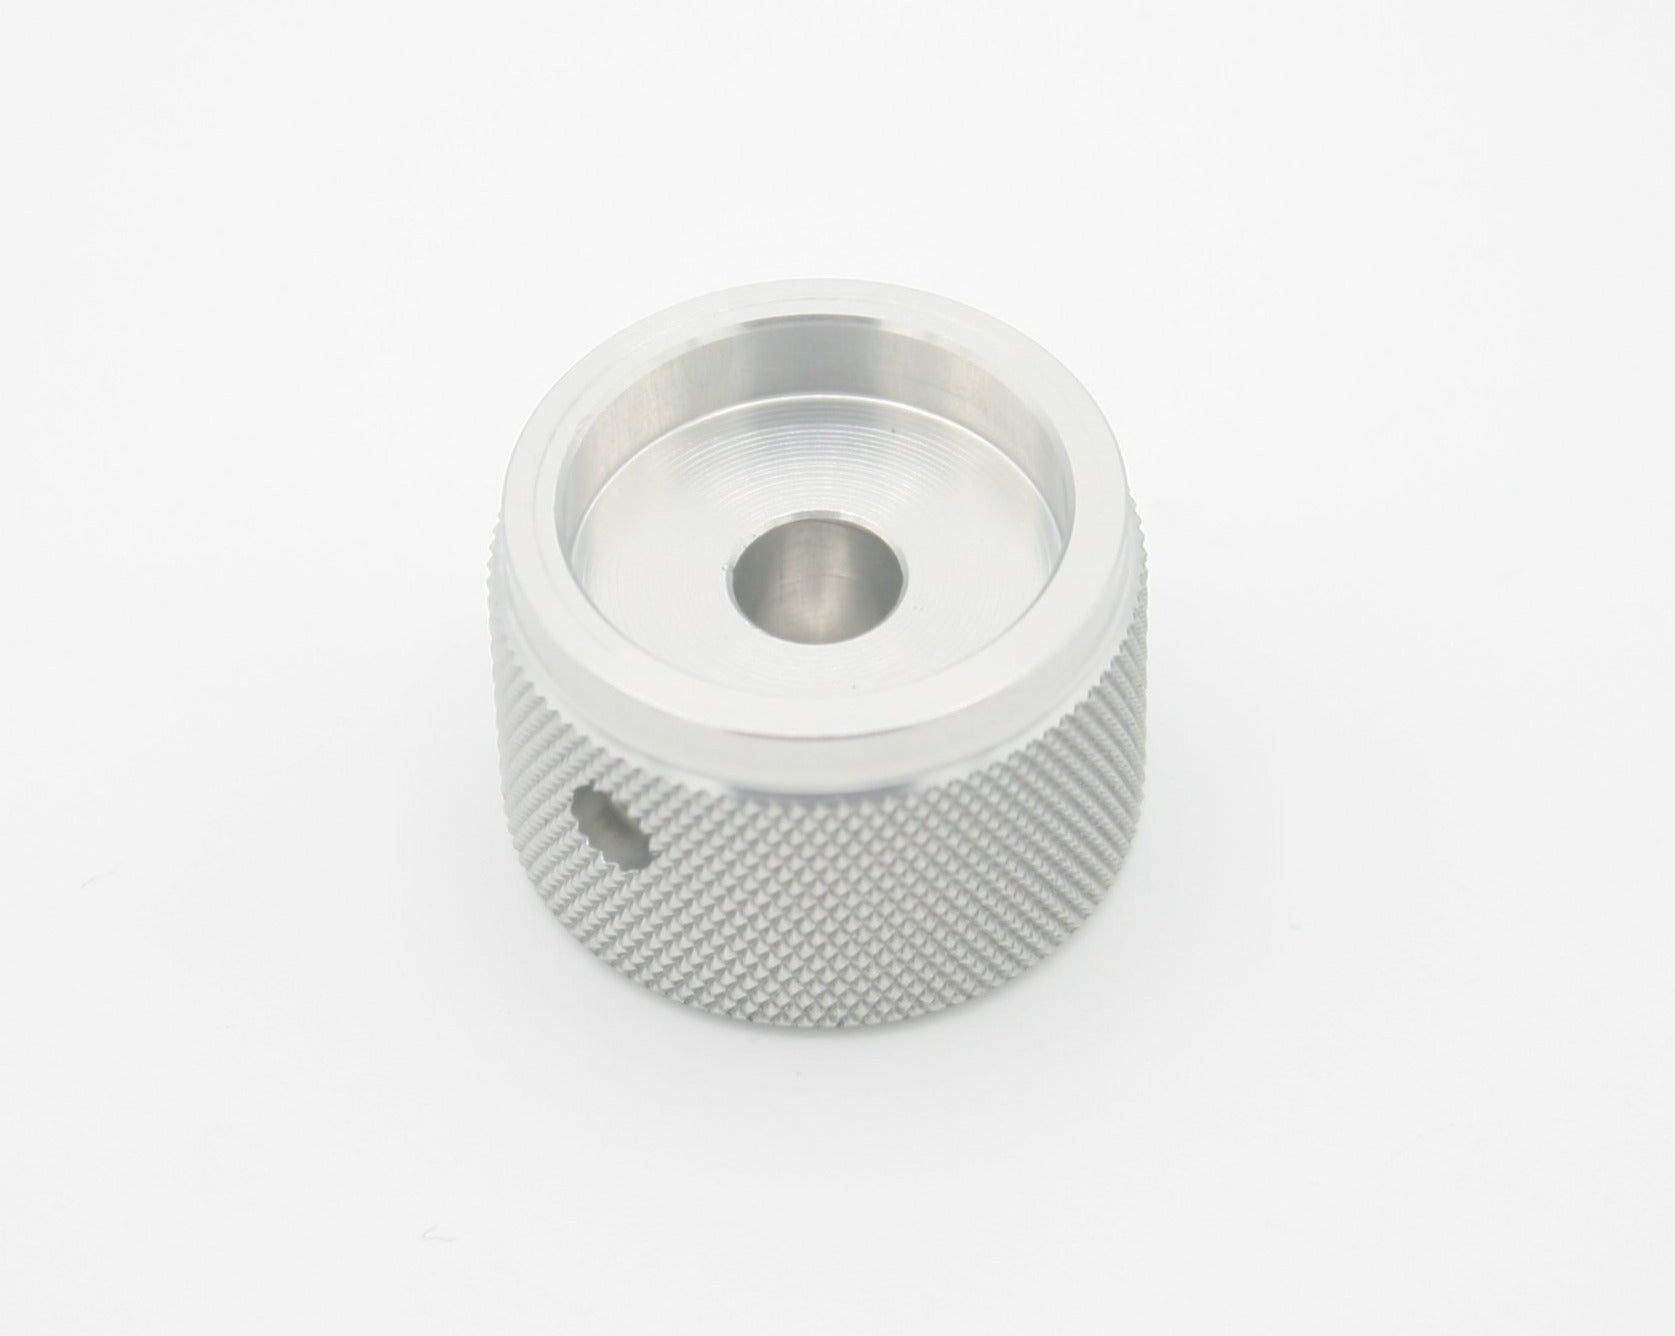 Anodzied Aluminum Knob - 1.25u - Pikatea